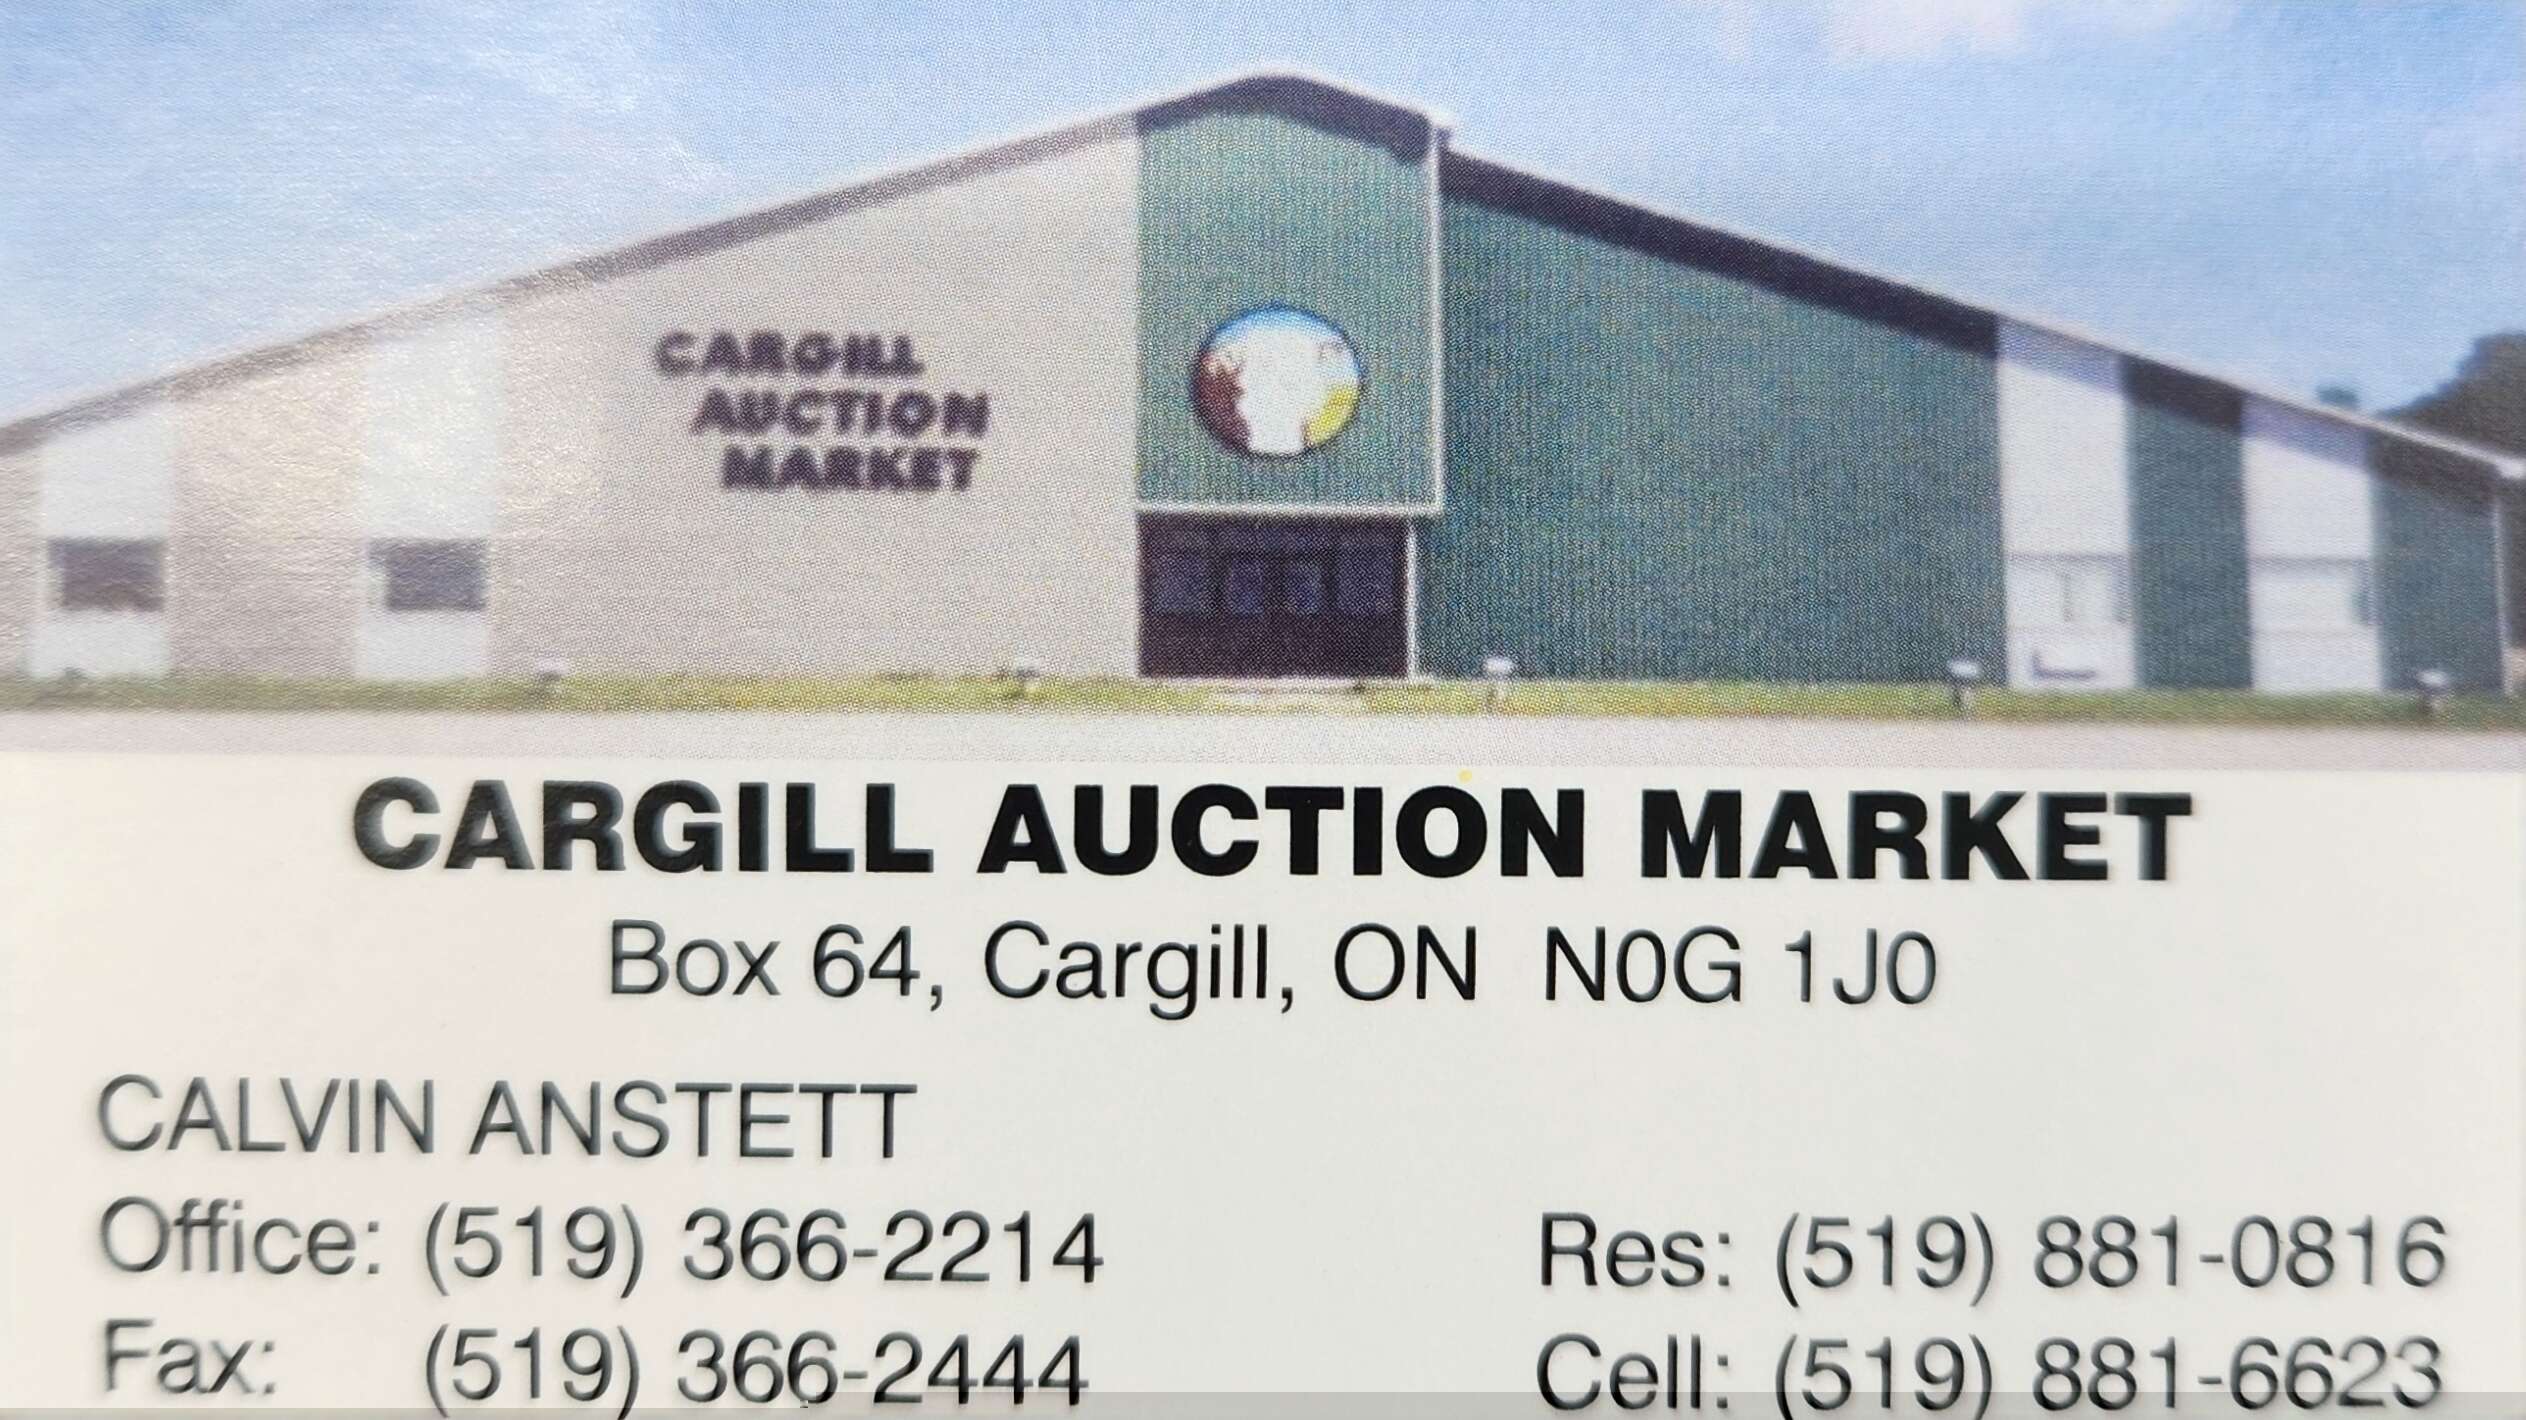 Cargill Auction Market